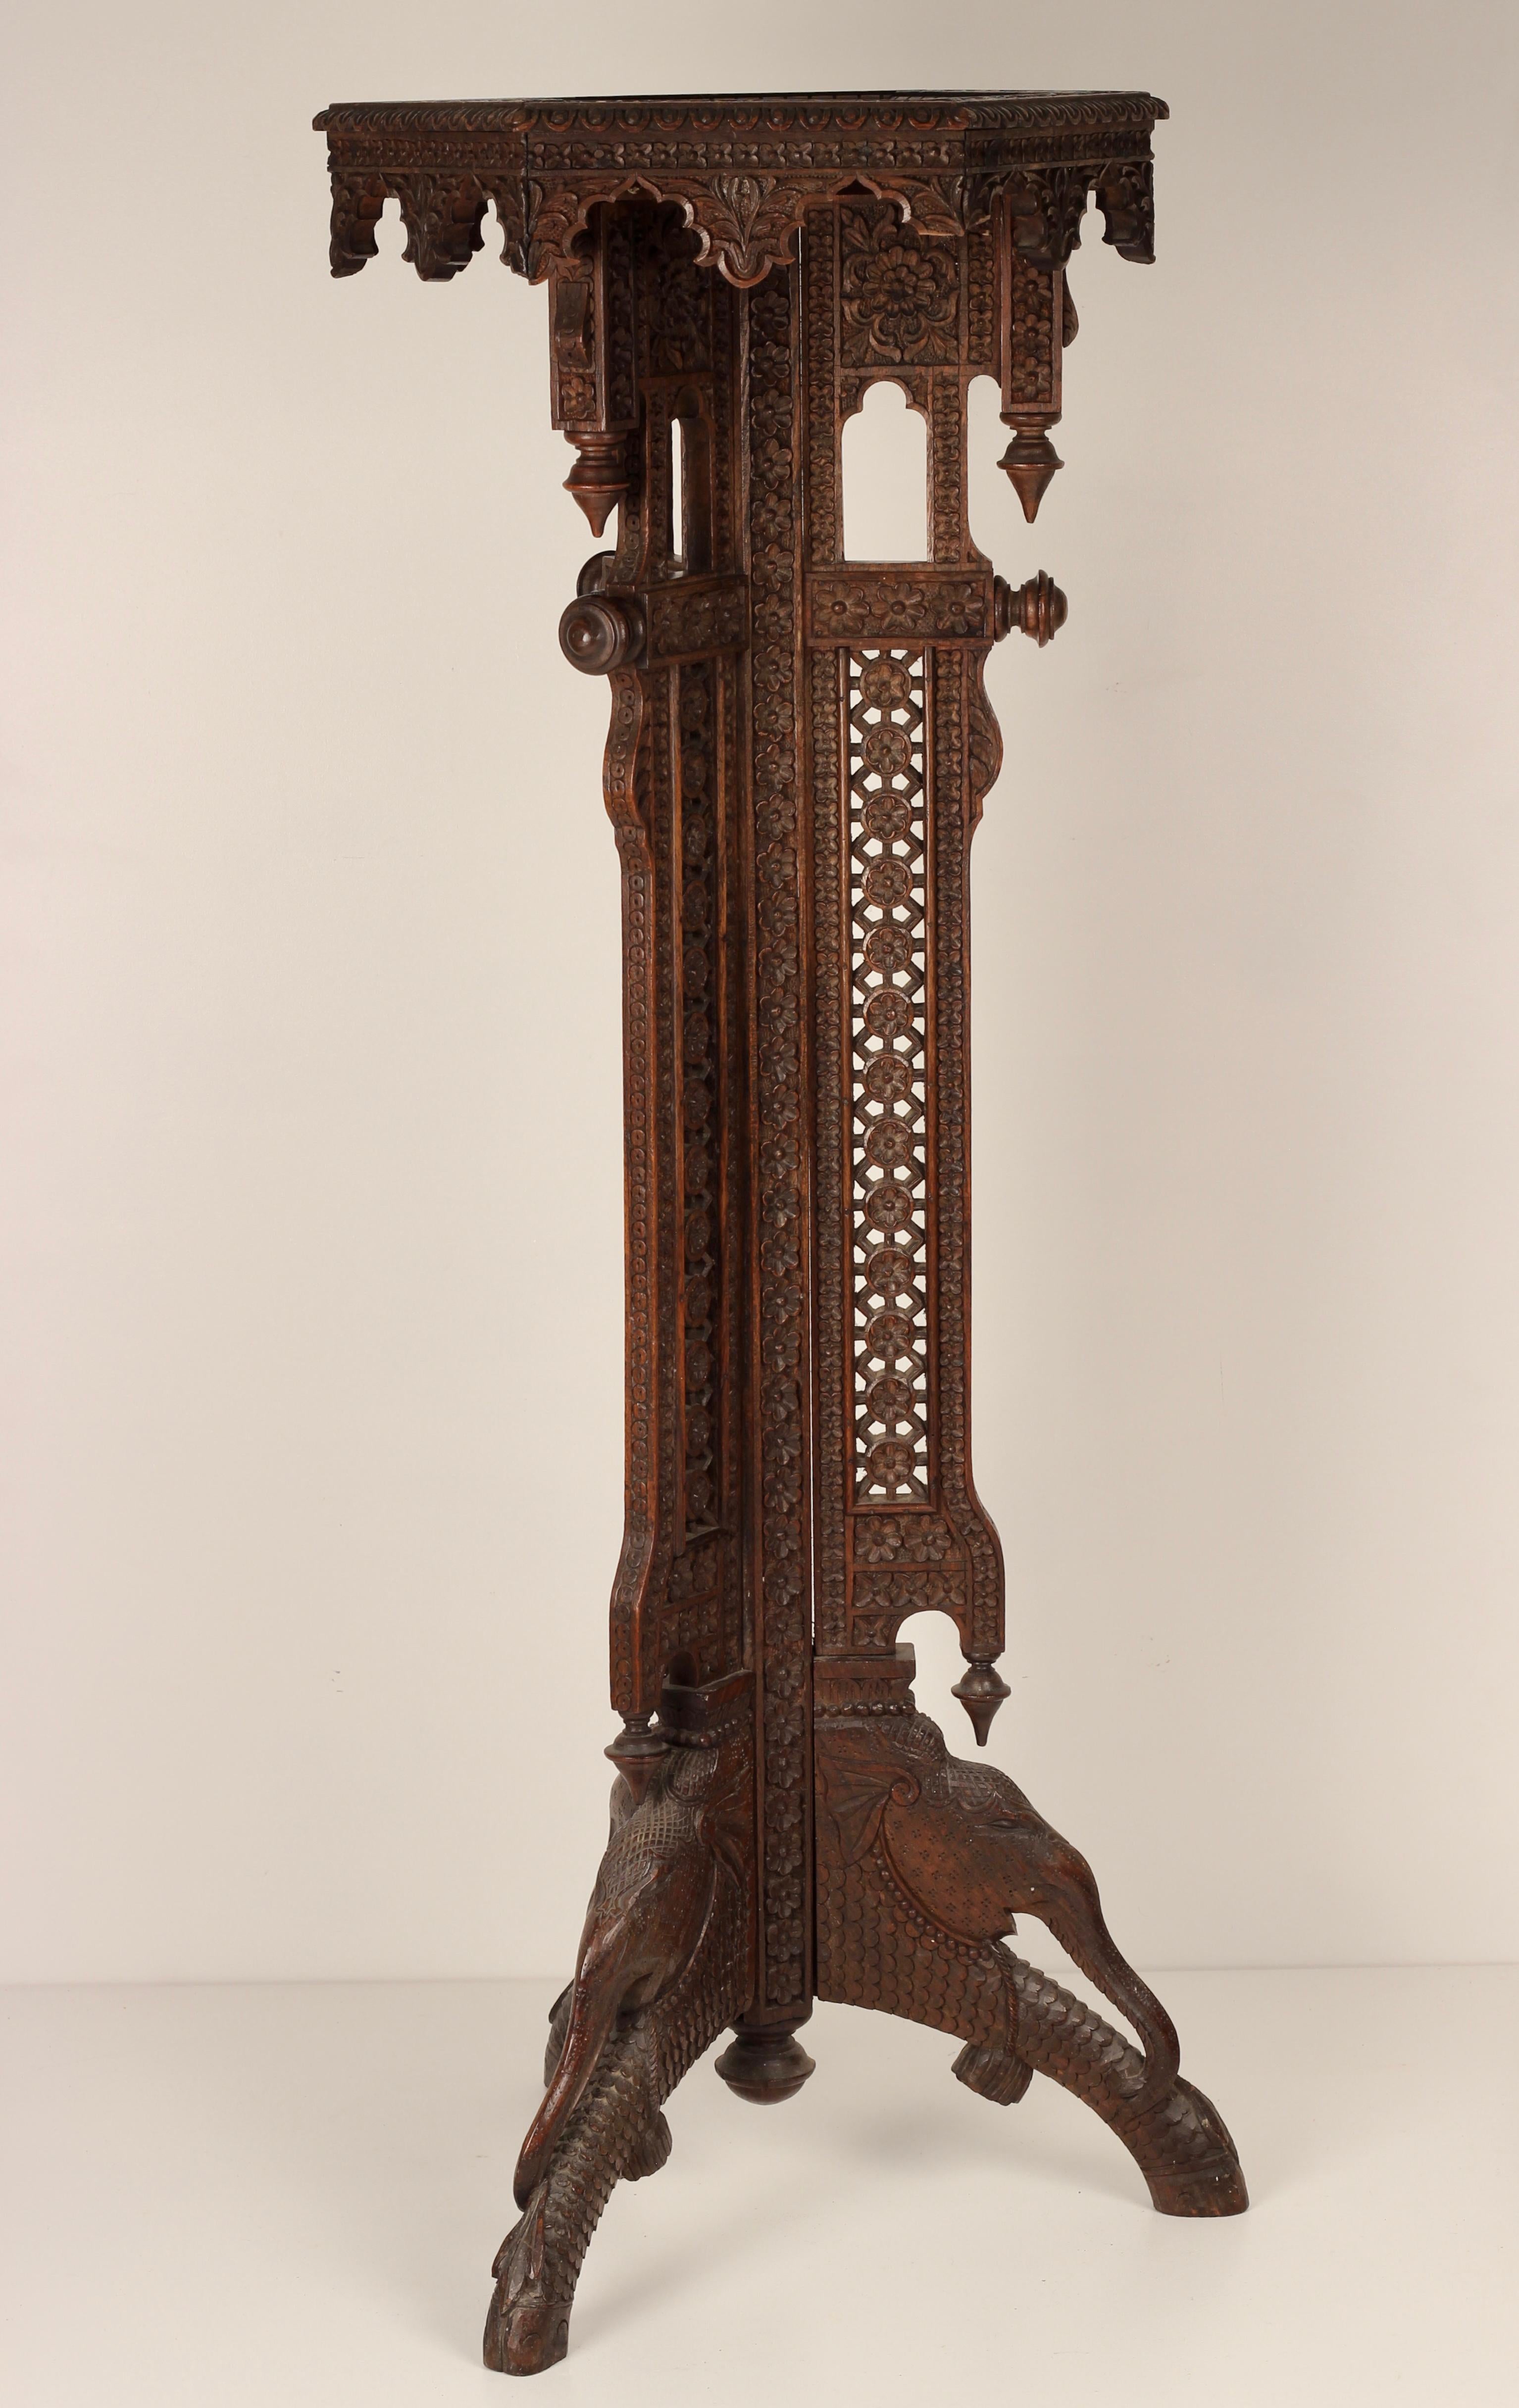 Eine unglaublich detaillierte und kunstvolle handgeschnitzte Torchere aus Indien Ende des 19. Jahrhunderts. In den Sockel des Stücks sind 4 Elefanten im Profil geschnitzt, die von einer Menge botanisch geschnitzter Blätter und Blütenköpfe umgeben